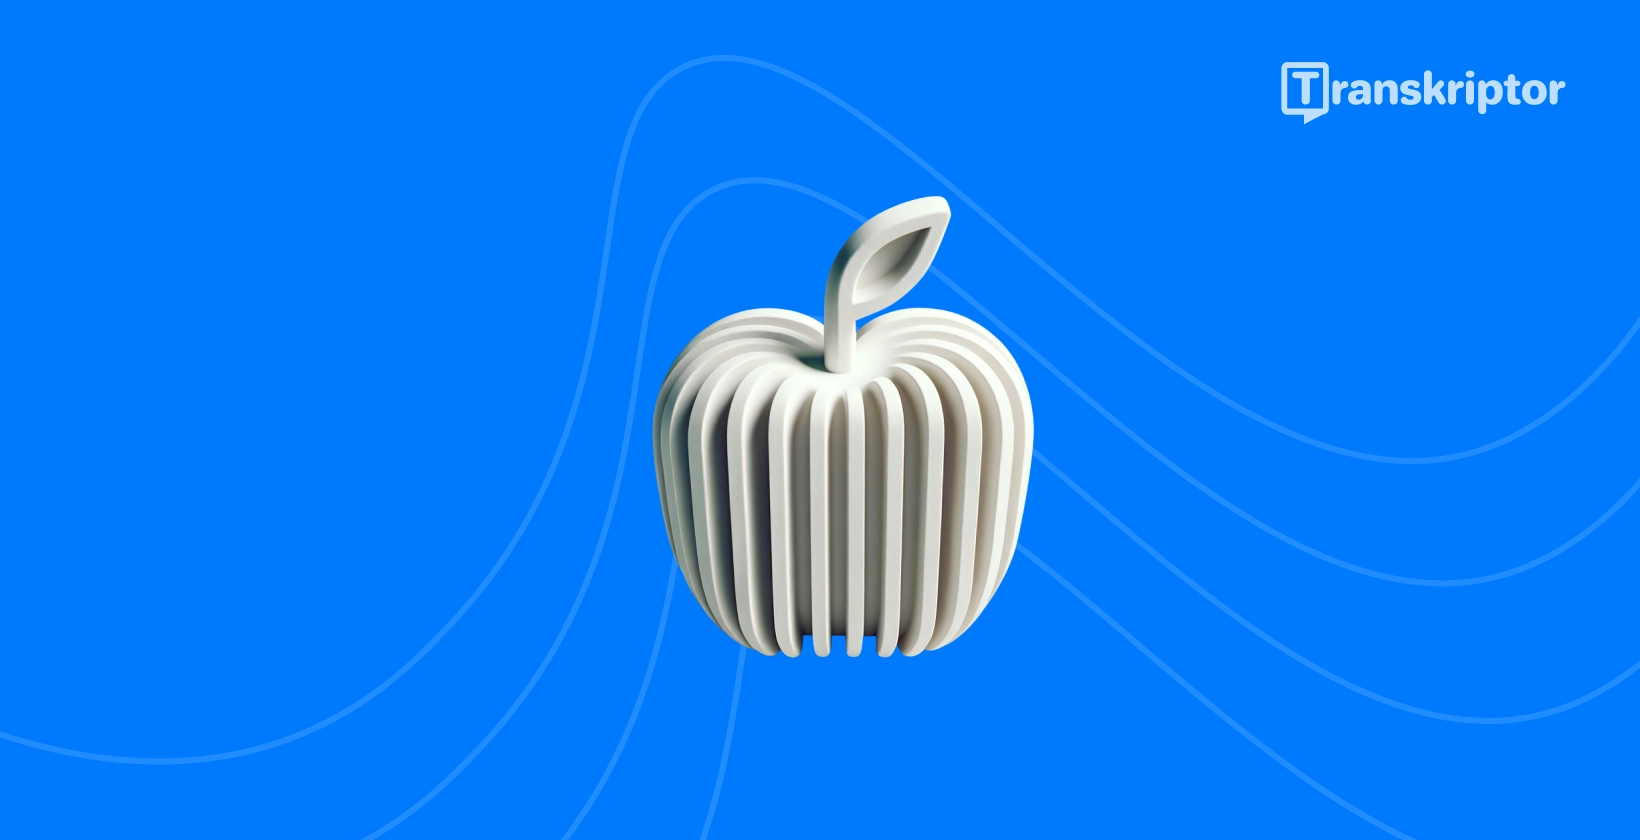 Stilizirano jabolko z zvočnimi valovi predstavlja najboljše aplikacije za prepisovanje, ki so na voljo iPhone uporabnikom.